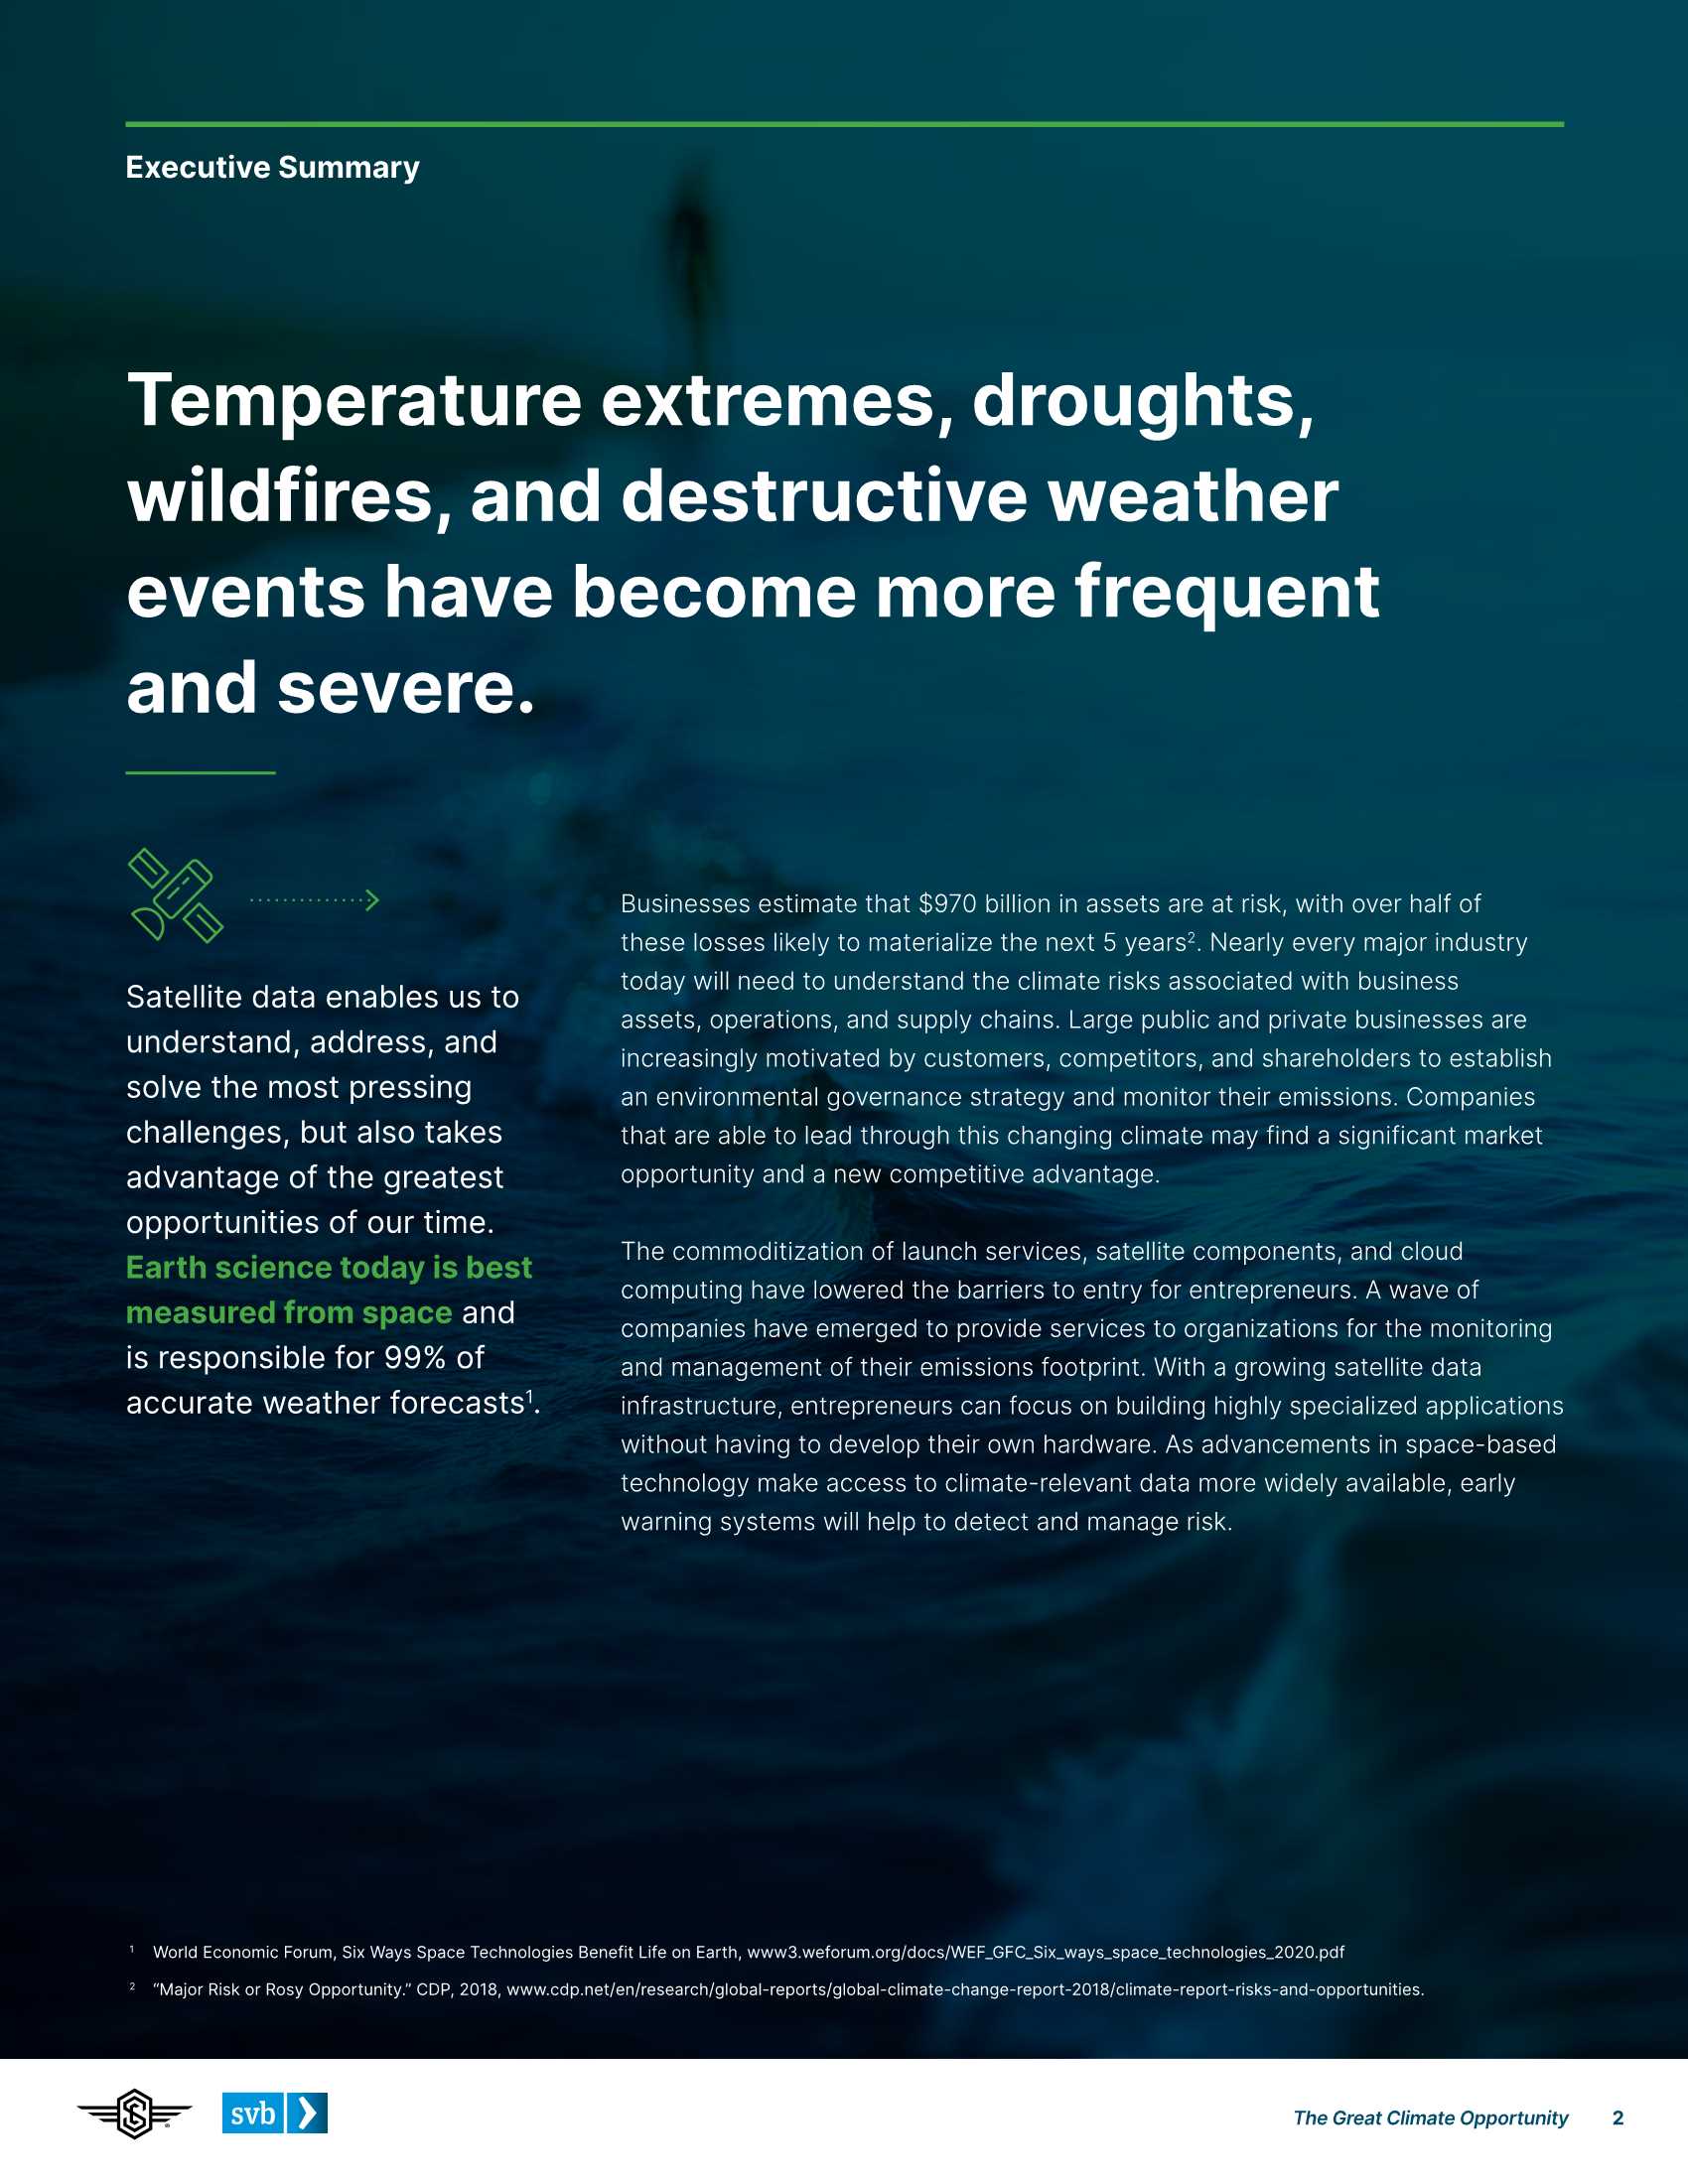 硅谷银行-大气候机遇（英）-2021.12-29页